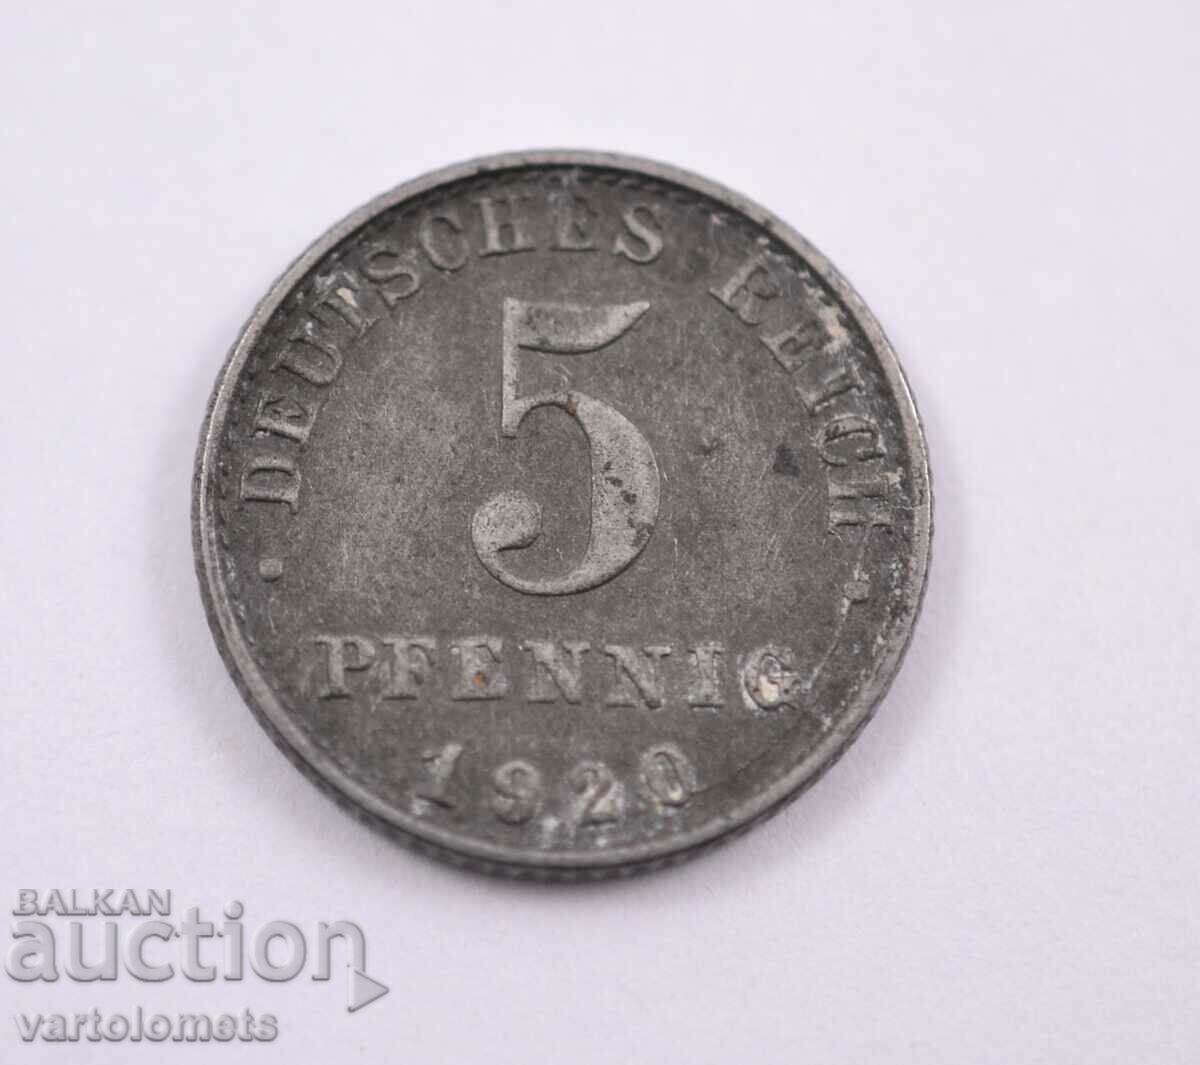 5 pfennig 1920, Germany